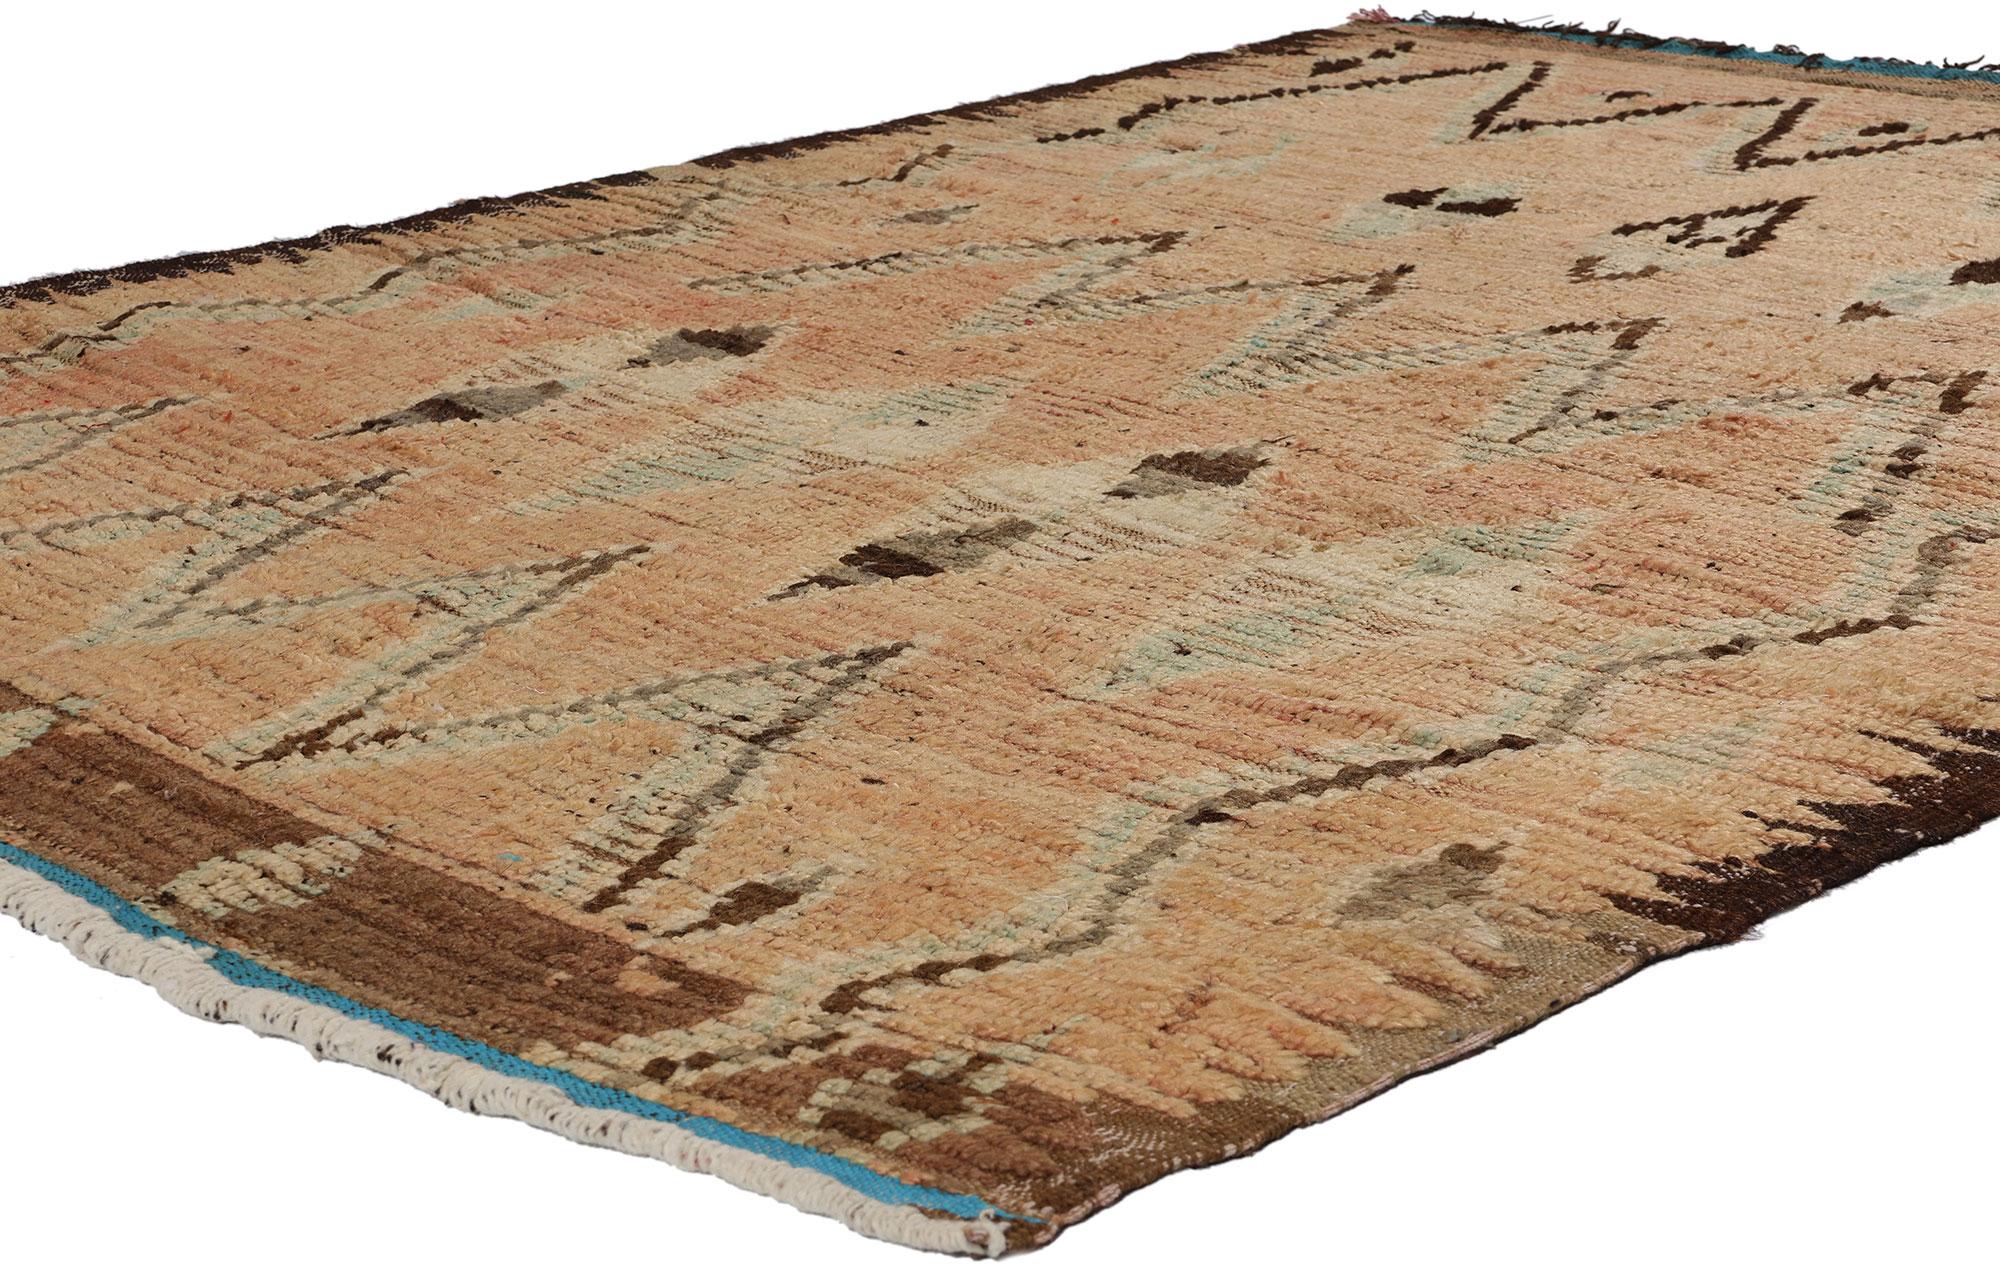 21725 Tapis marocain vintage en azilal de couleur terre, 04'07 x 06'06. Tissés à la main par des artisans berbères qualifiés dans la région d'Azilal au Maroc, les tapis marocains Earth-Tone Azilal présentent une palette inspirée des teintes